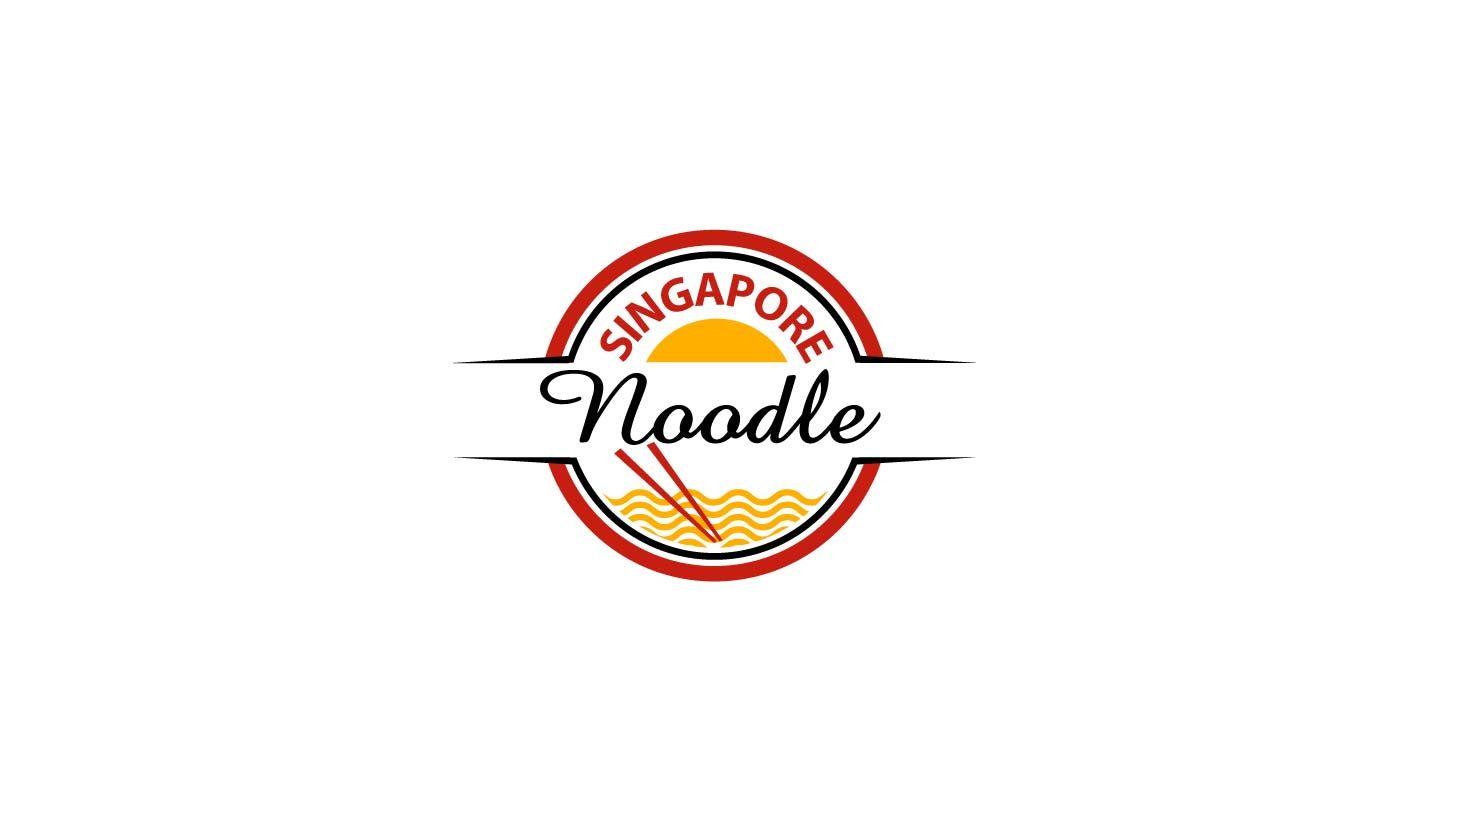 Noodle Logo - Logo Design for Singapore Noodle by parshdelhi. Design